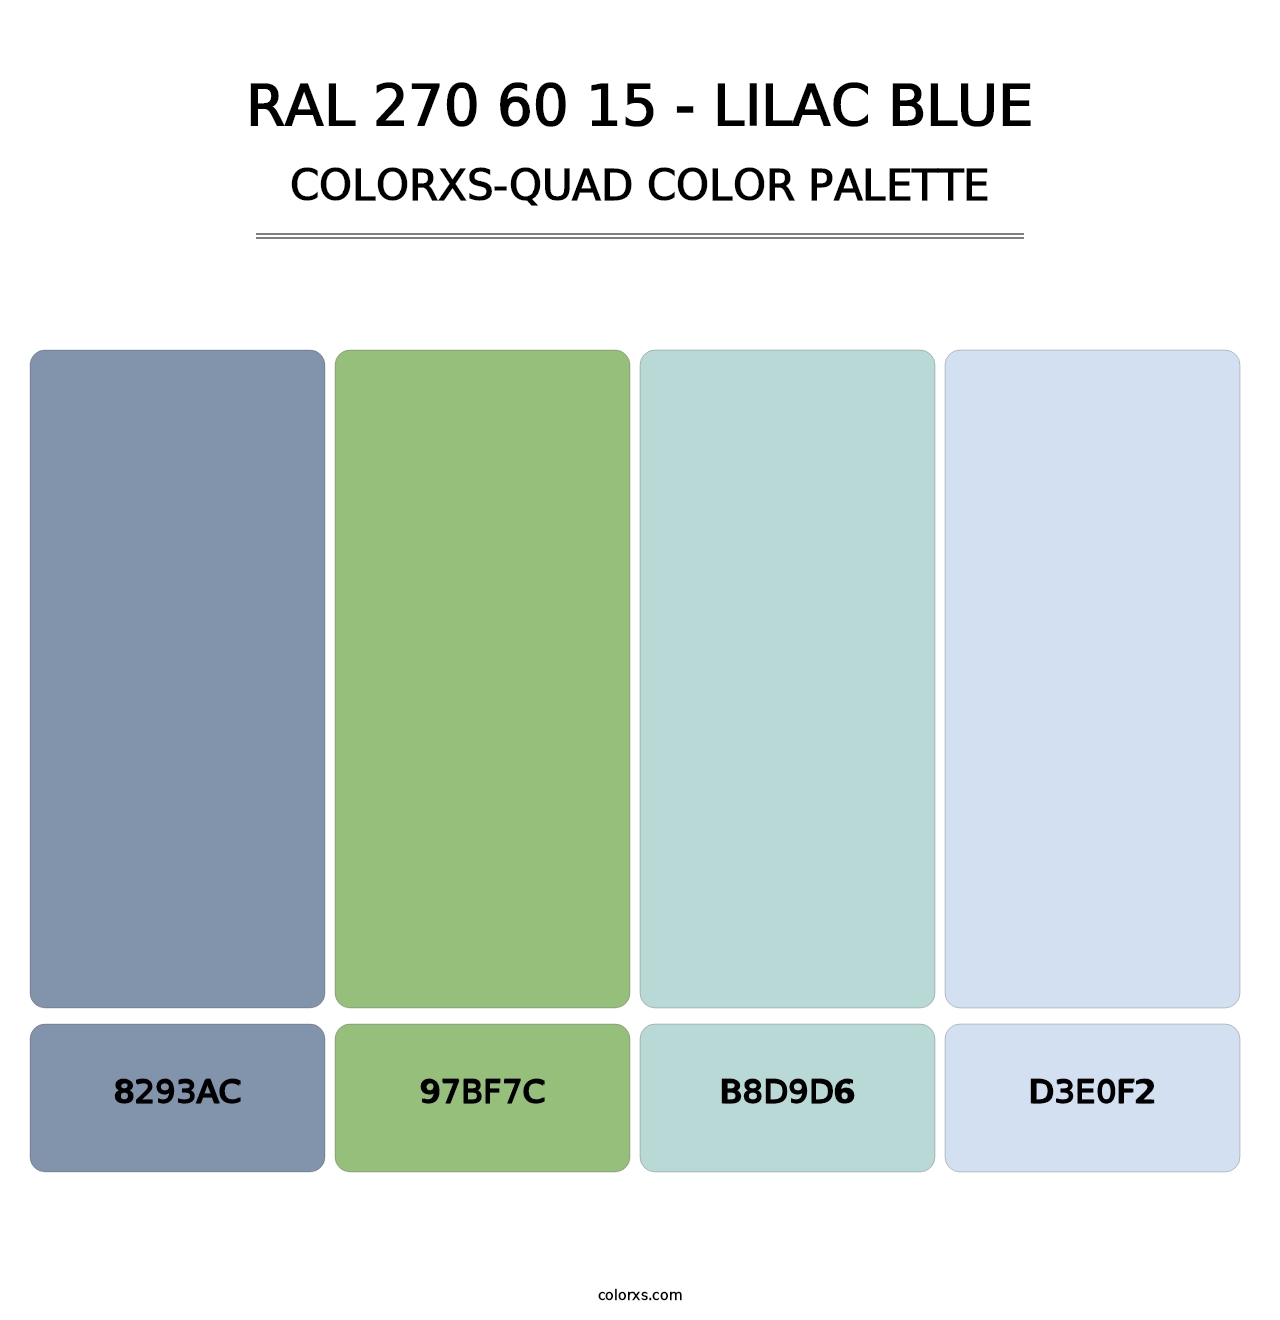 RAL 270 60 15 - Lilac Blue - Colorxs Quad Palette